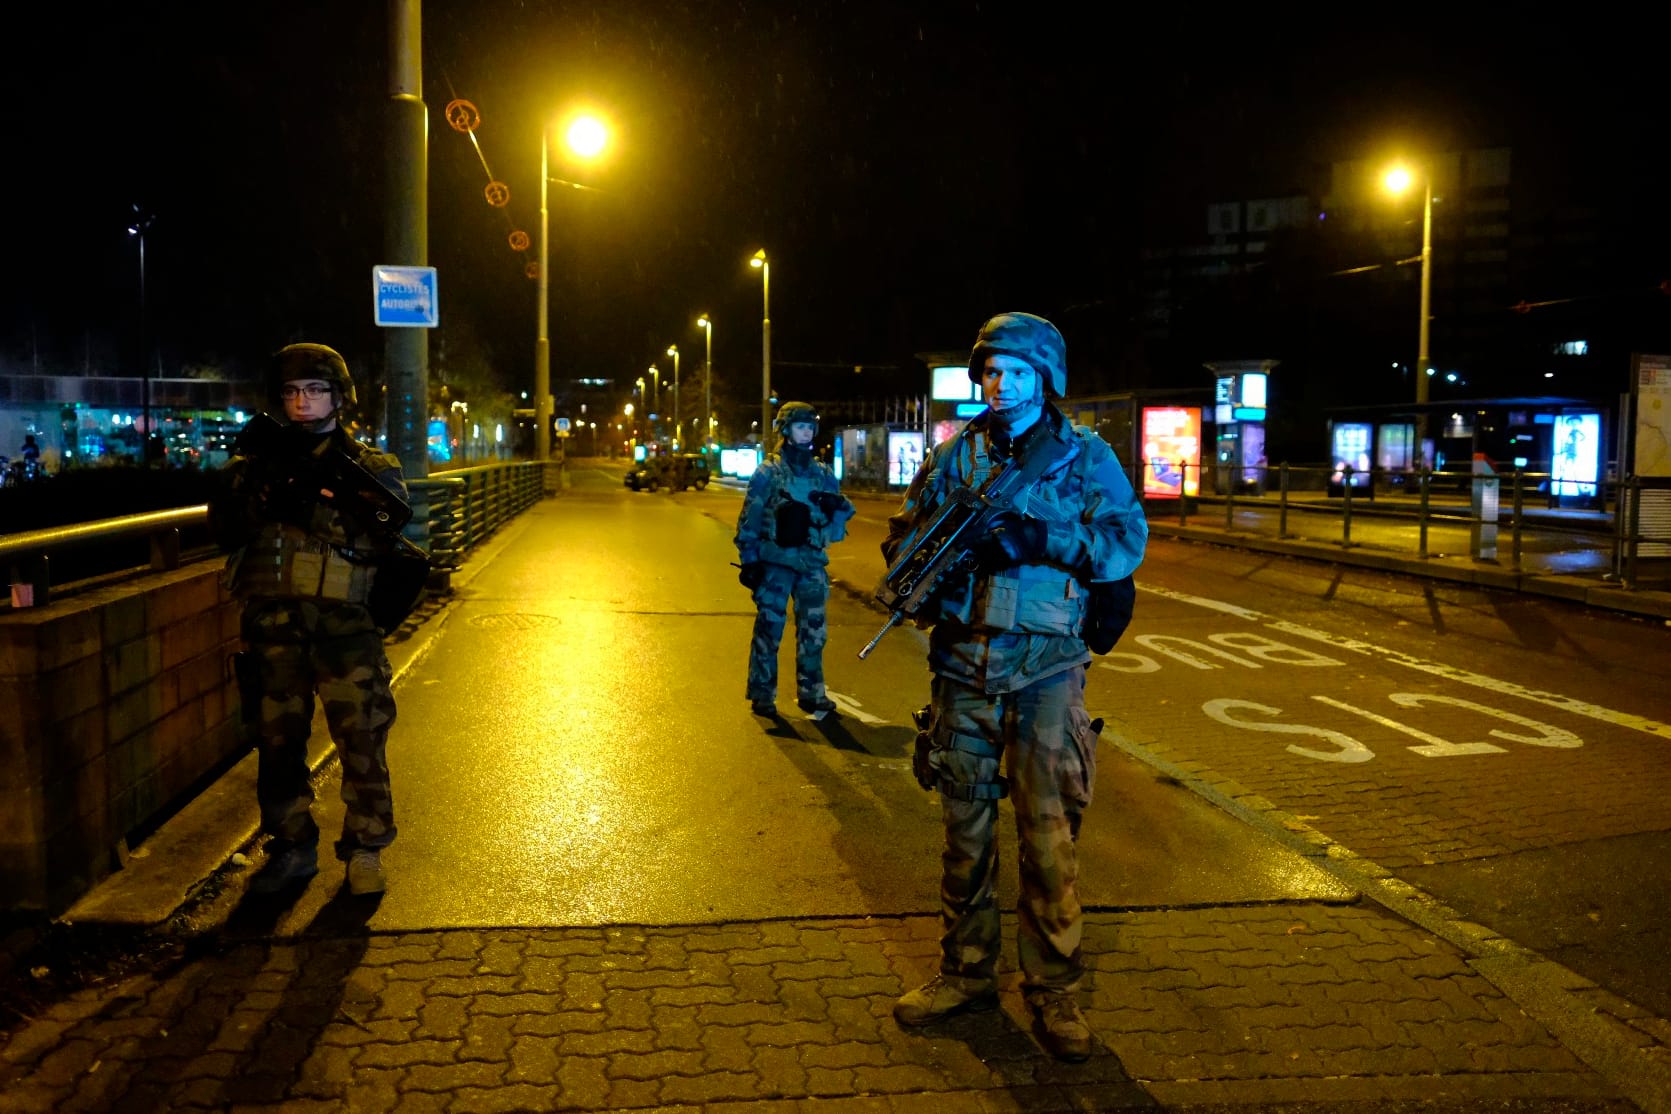 Soldaten sperren nach dem Angriff in Straßburg eine Straße ab. Nach den Schüssen hatte die Suche nach dem Mann begonnen.